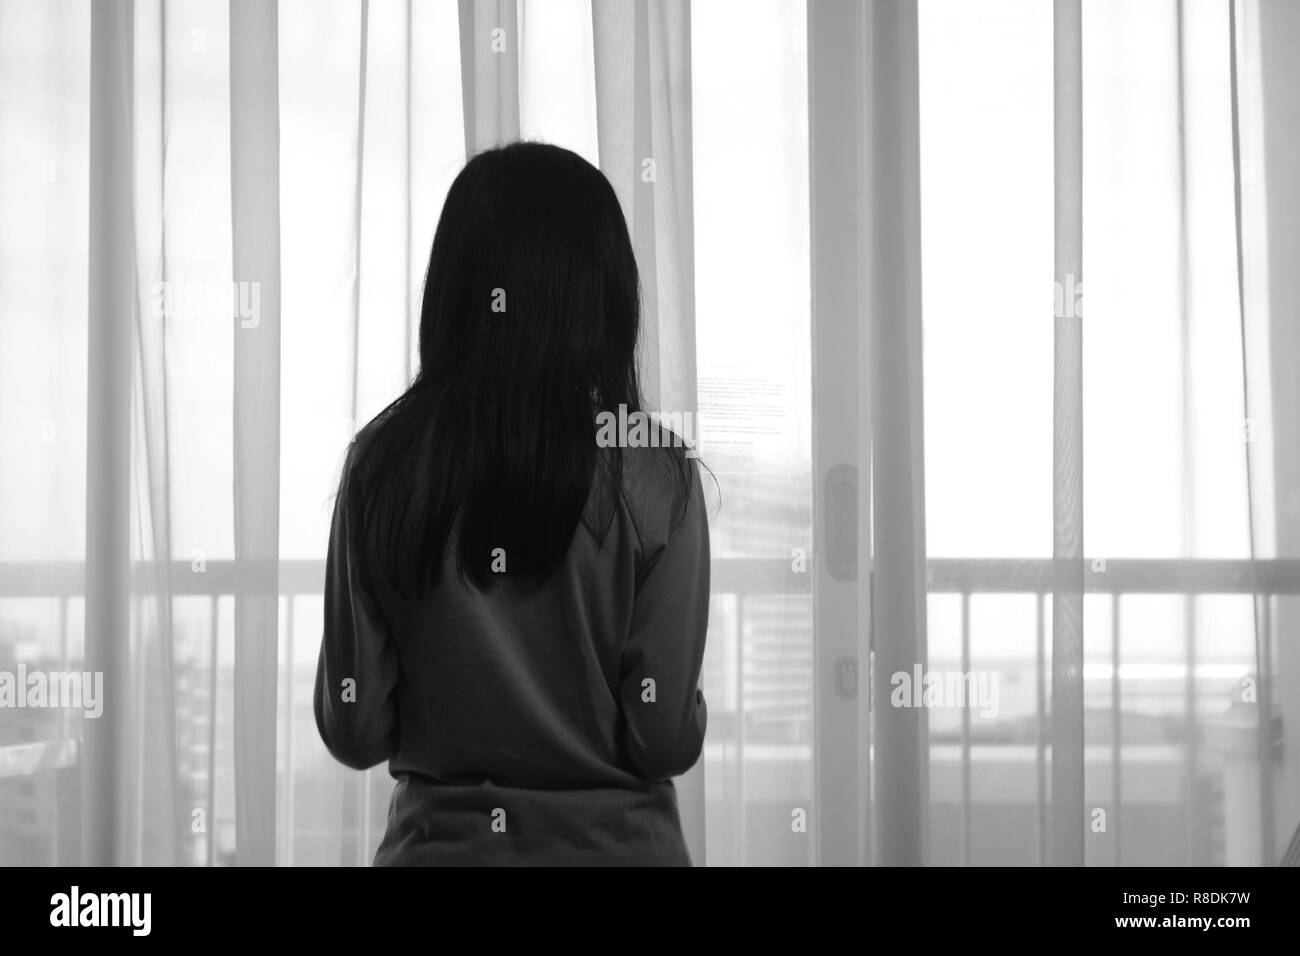 Vue arrière de l'image triste fille solitaire à travers la fenêtre en noir et blanc photo monochrome Banque D'Images